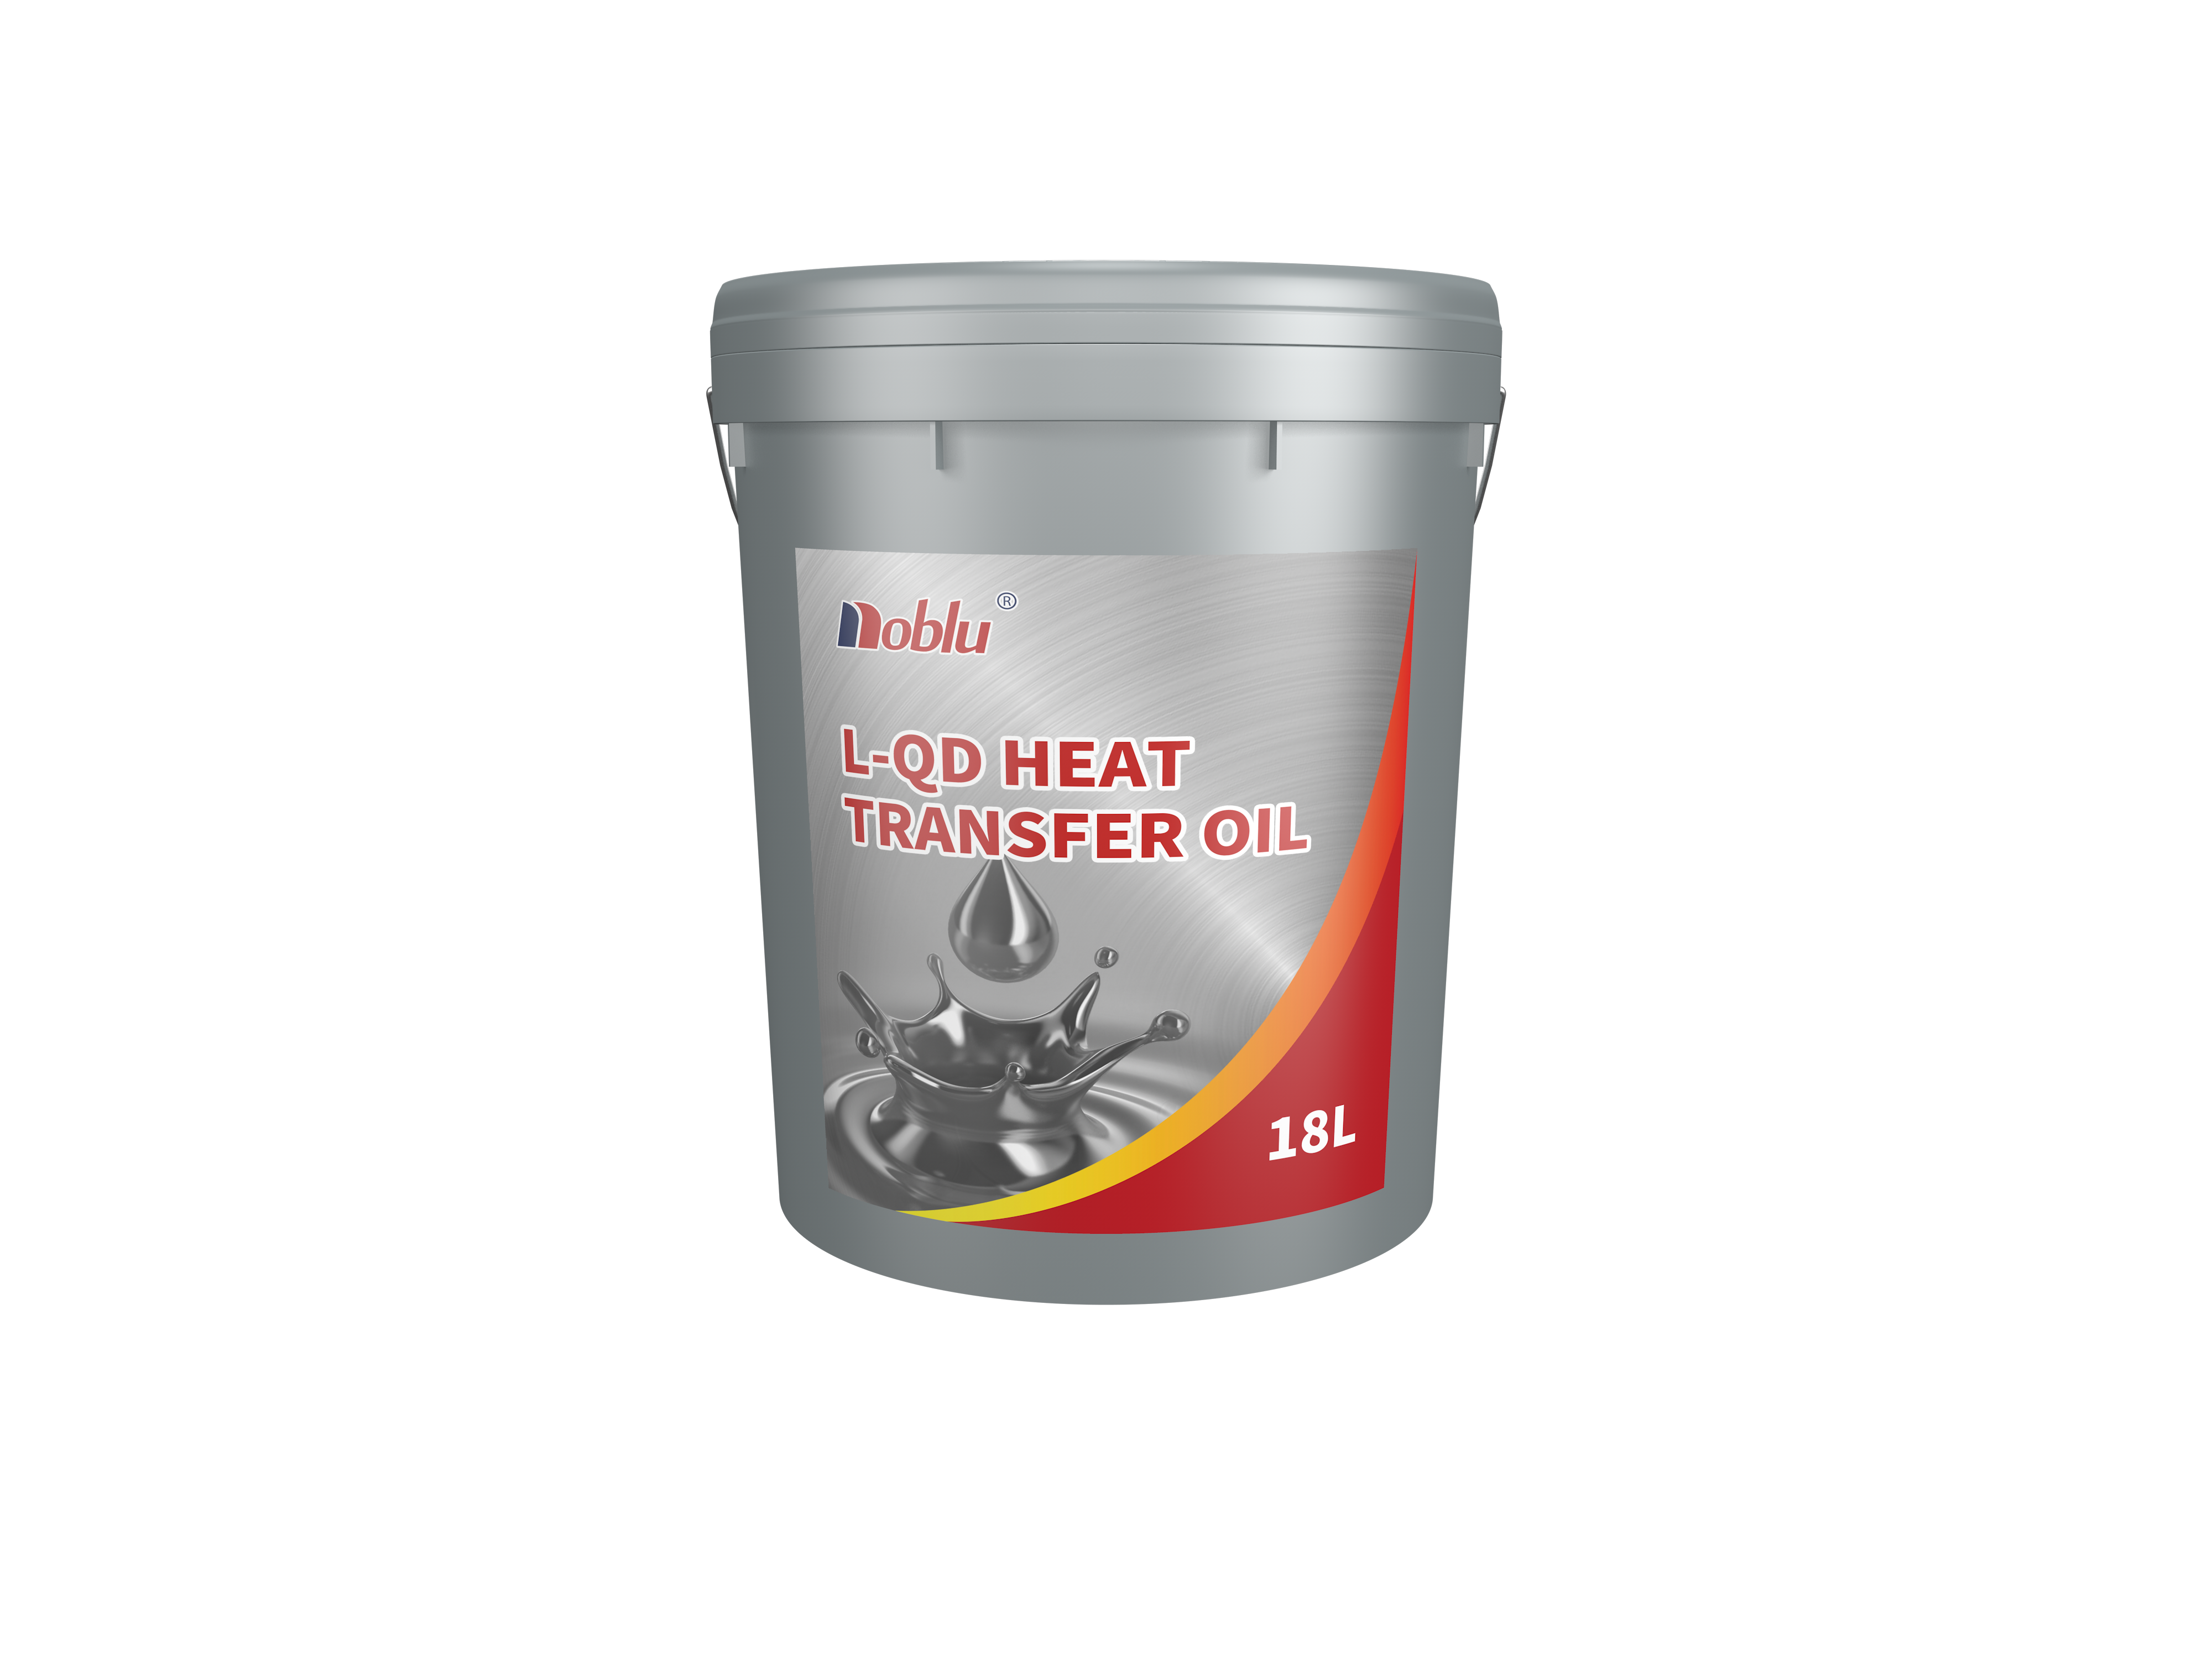 L-QD heat transfer oil